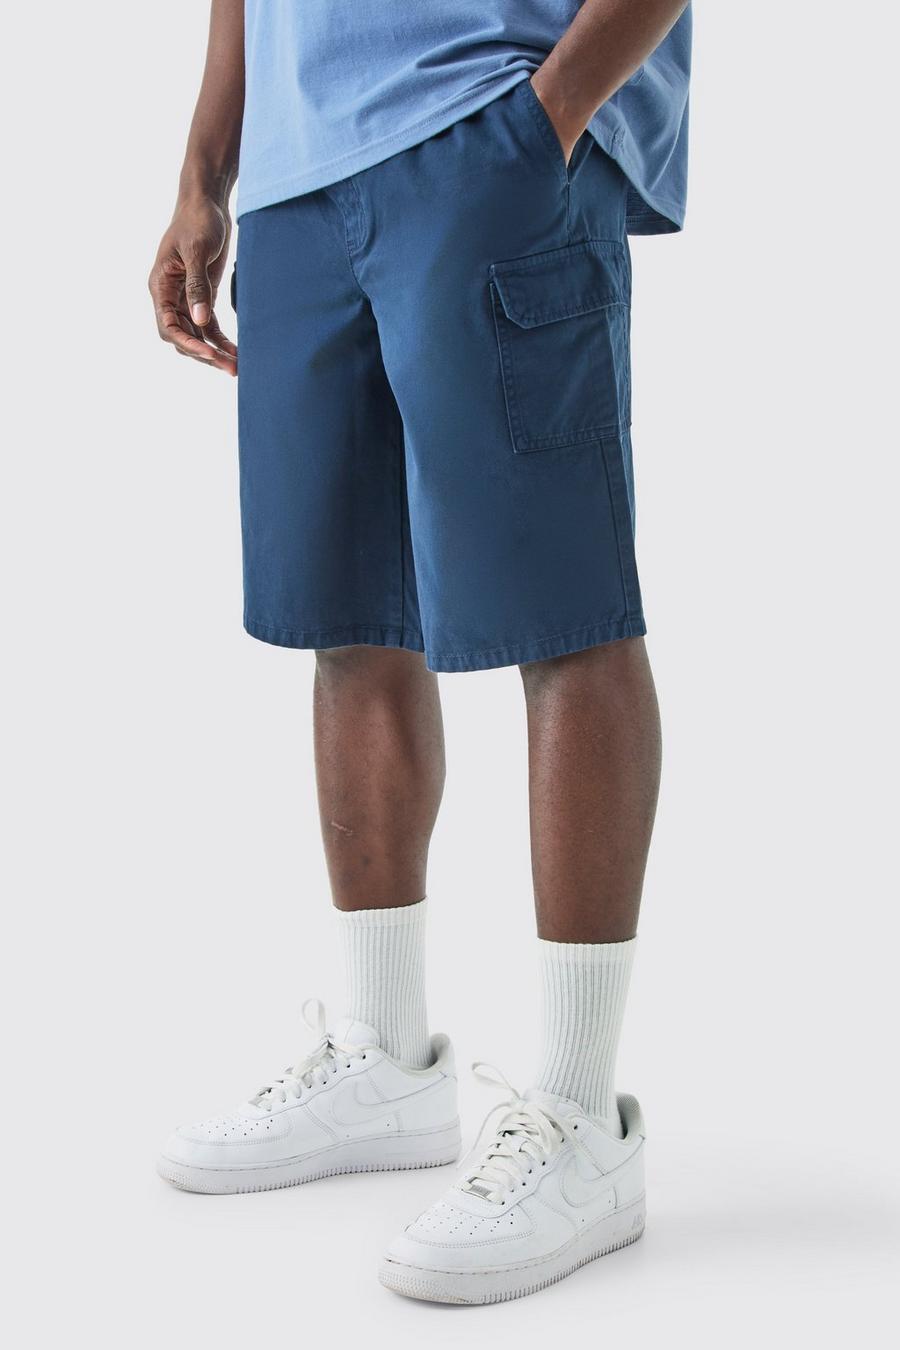 Lockere Cargo-Shorts, Navy